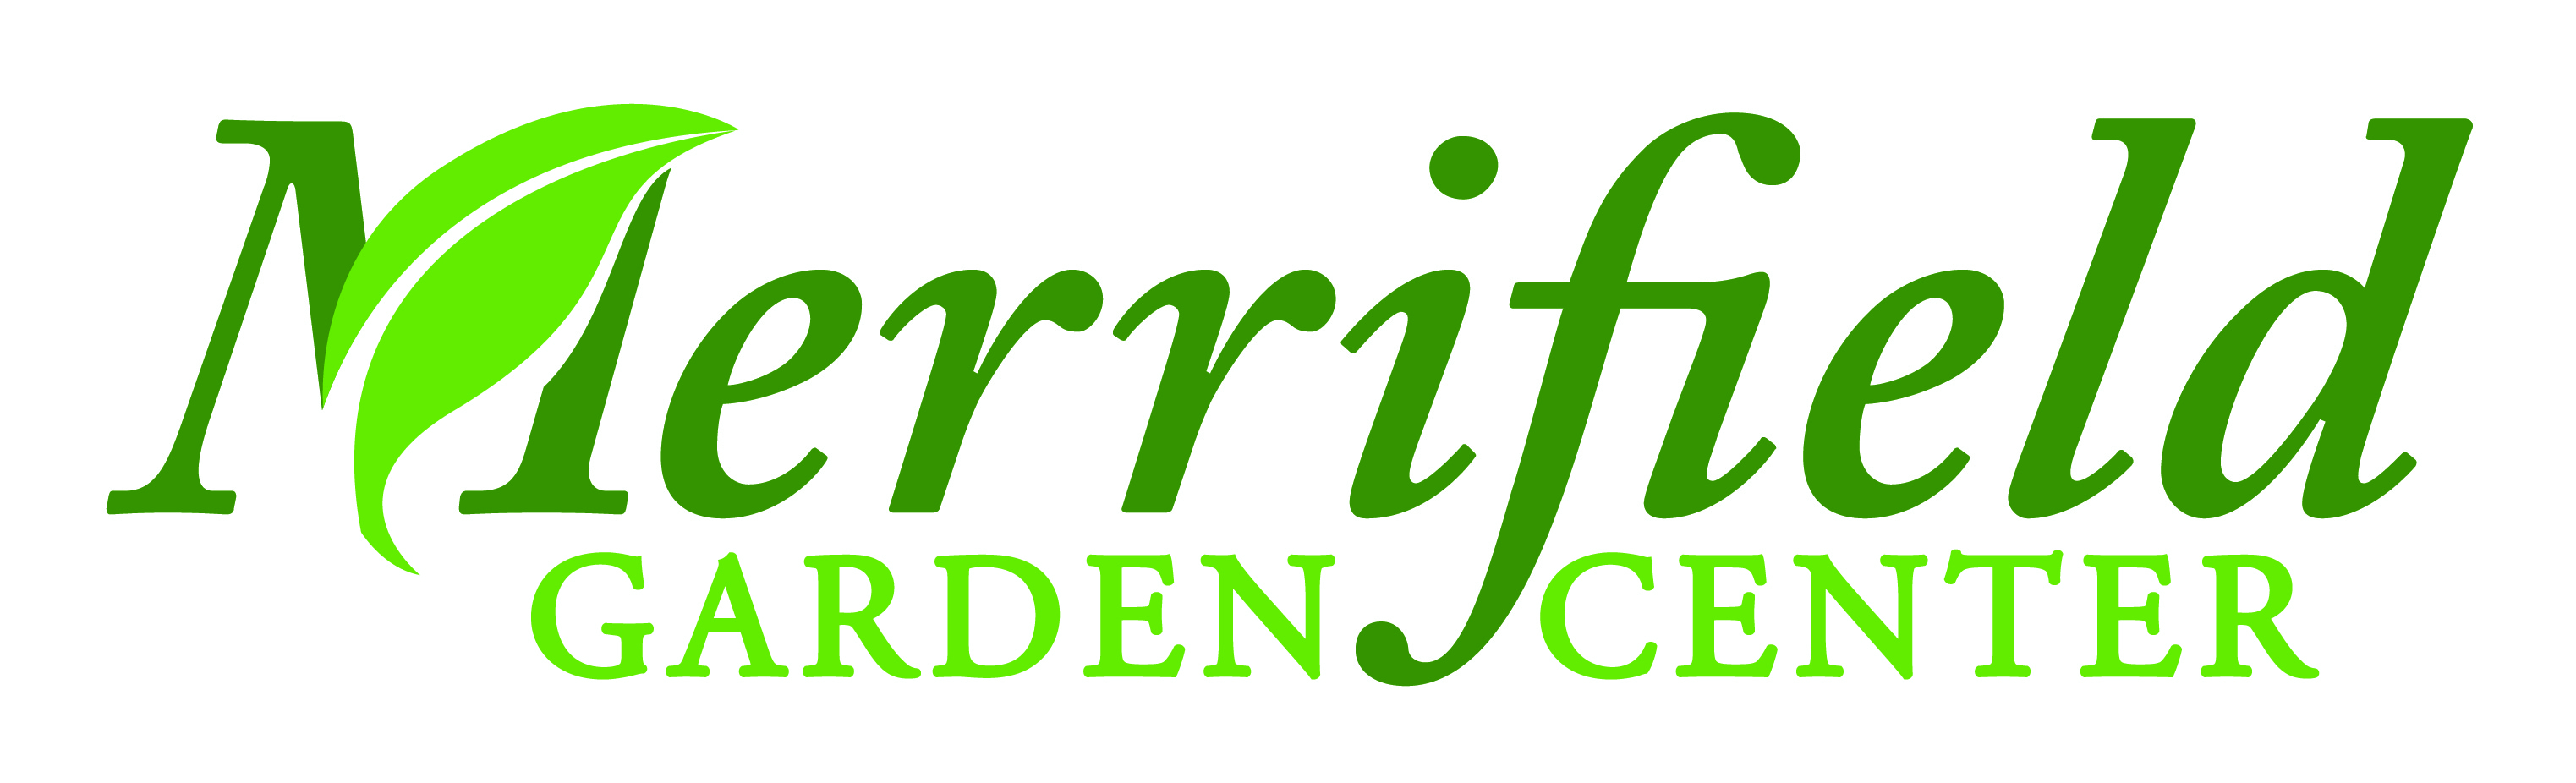 Merrifield Garden Center